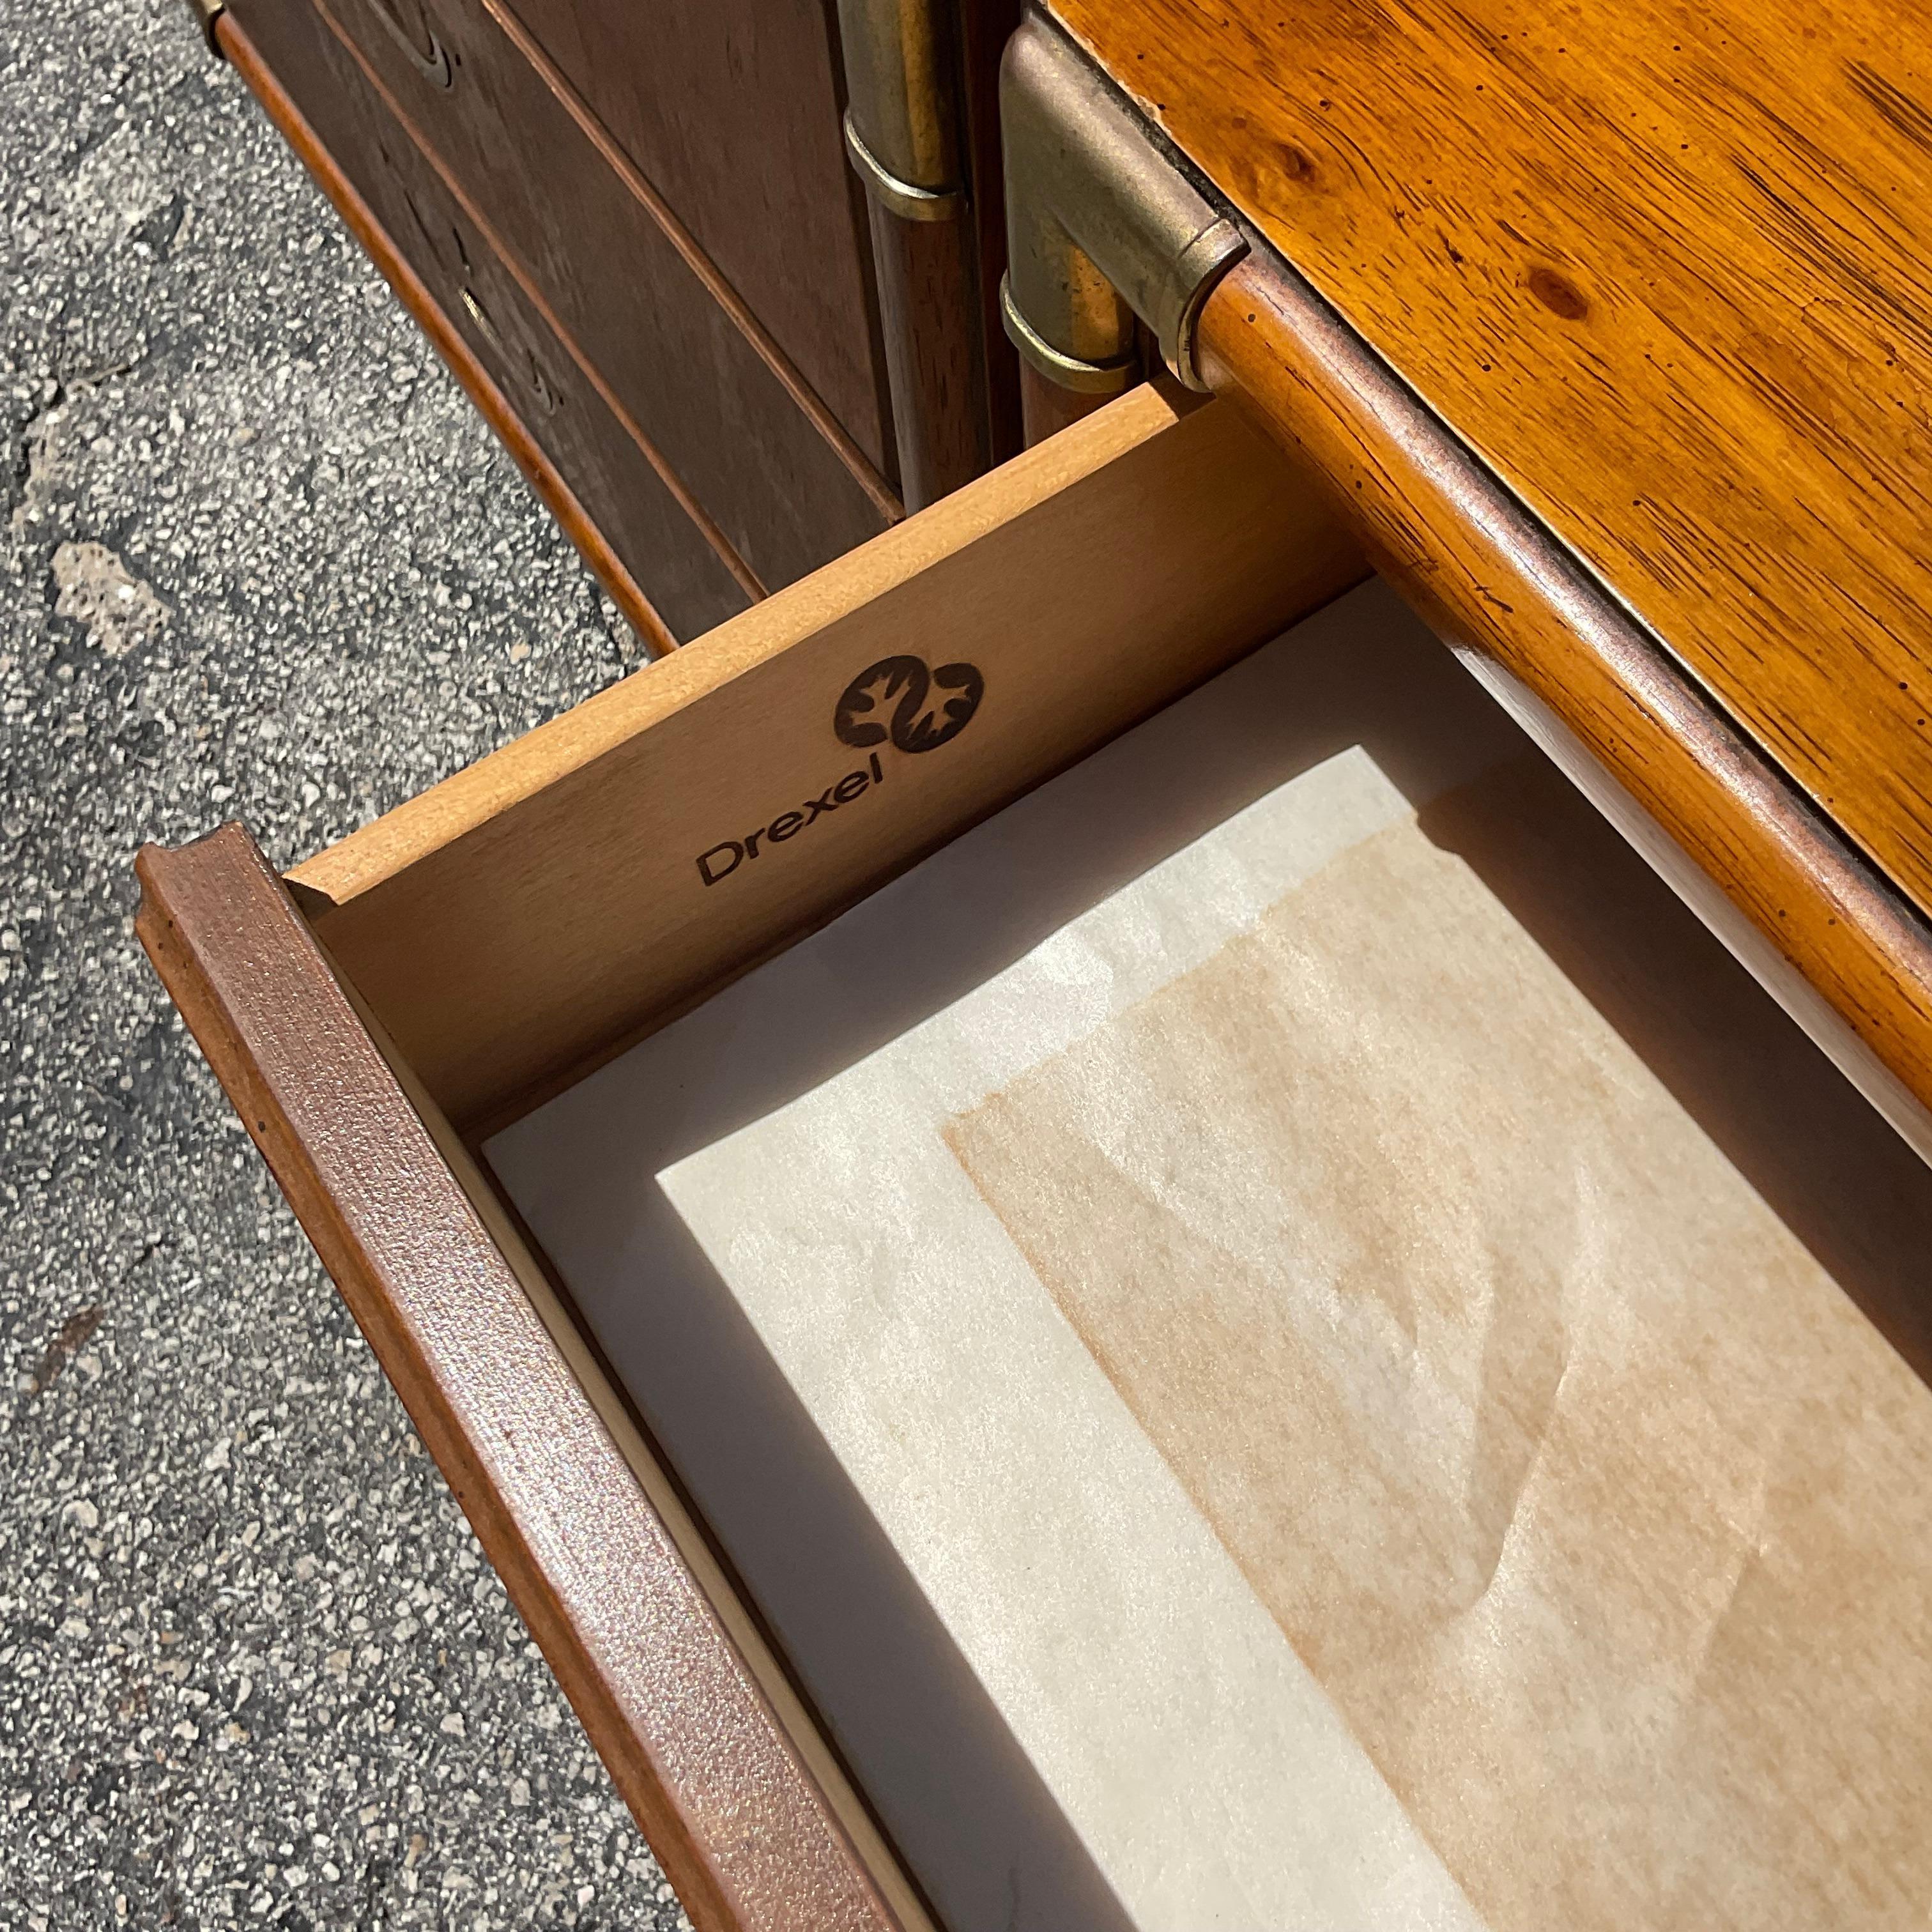 Apportez une touche éclectique à votre chambre à coucher avec cette paire de tables de chevet Vintage Byxel. Reflétant l'esprit aventureux du design américain, chaque pièce allie l'élégance intemporelle de l'artisanat de Drexel à des accents